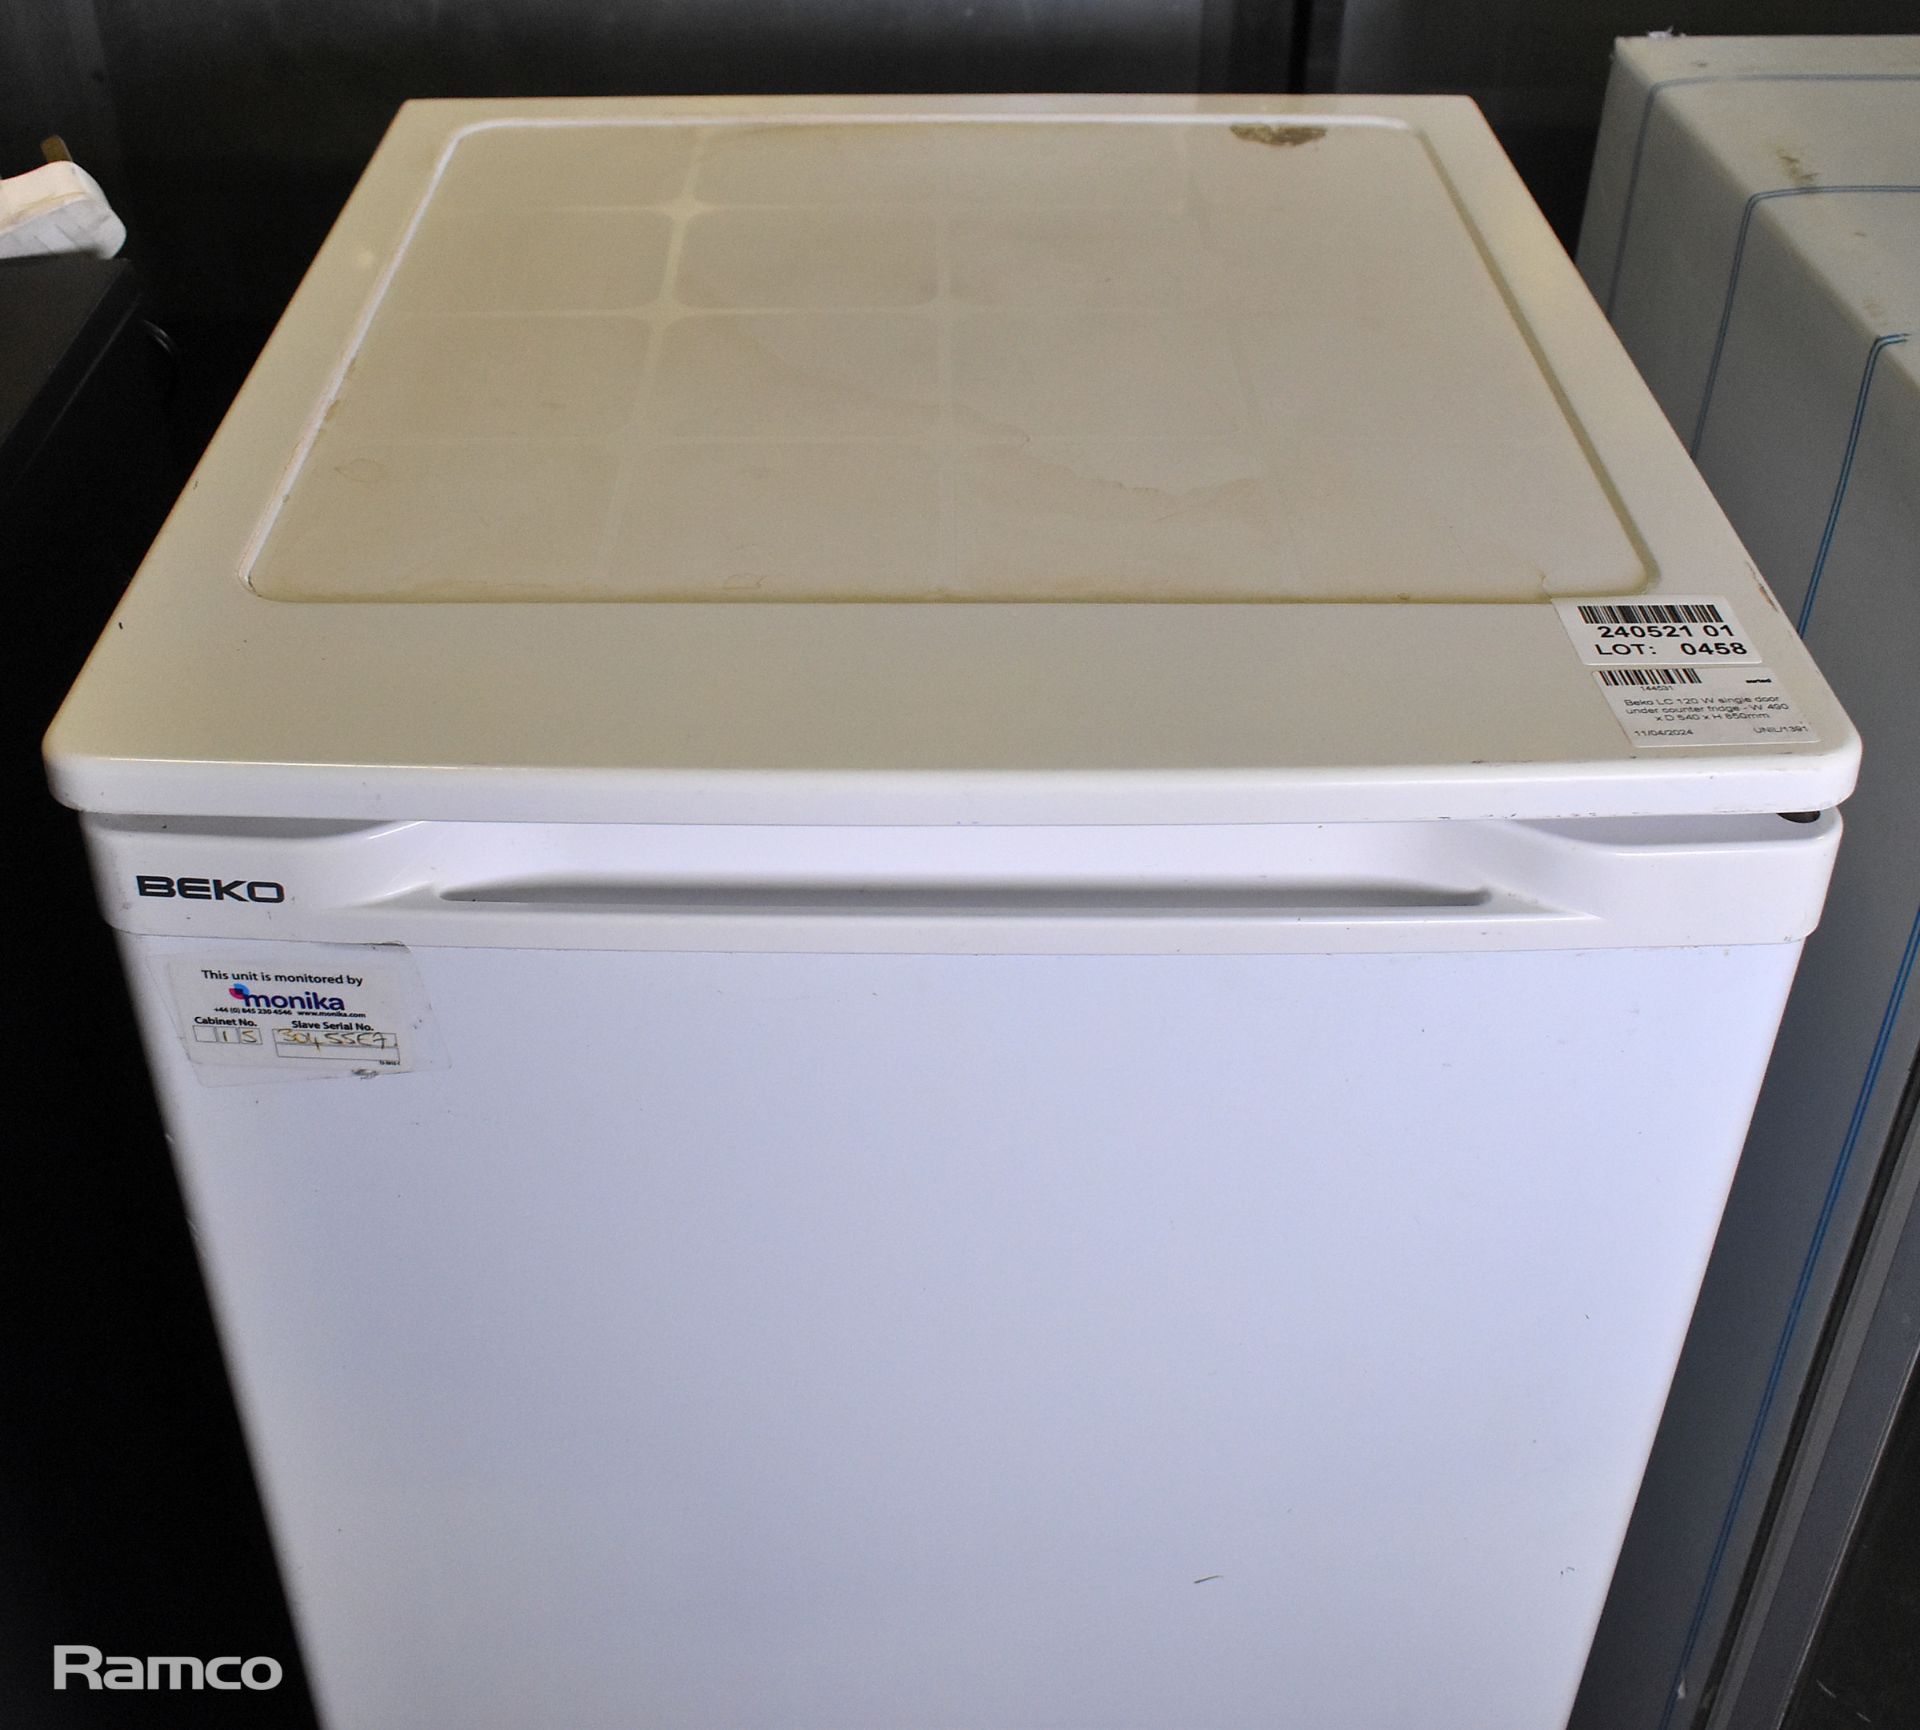 Beko LC 120 W single door under counter fridge - W 490 x D 540 x H 850mm - Image 4 of 4